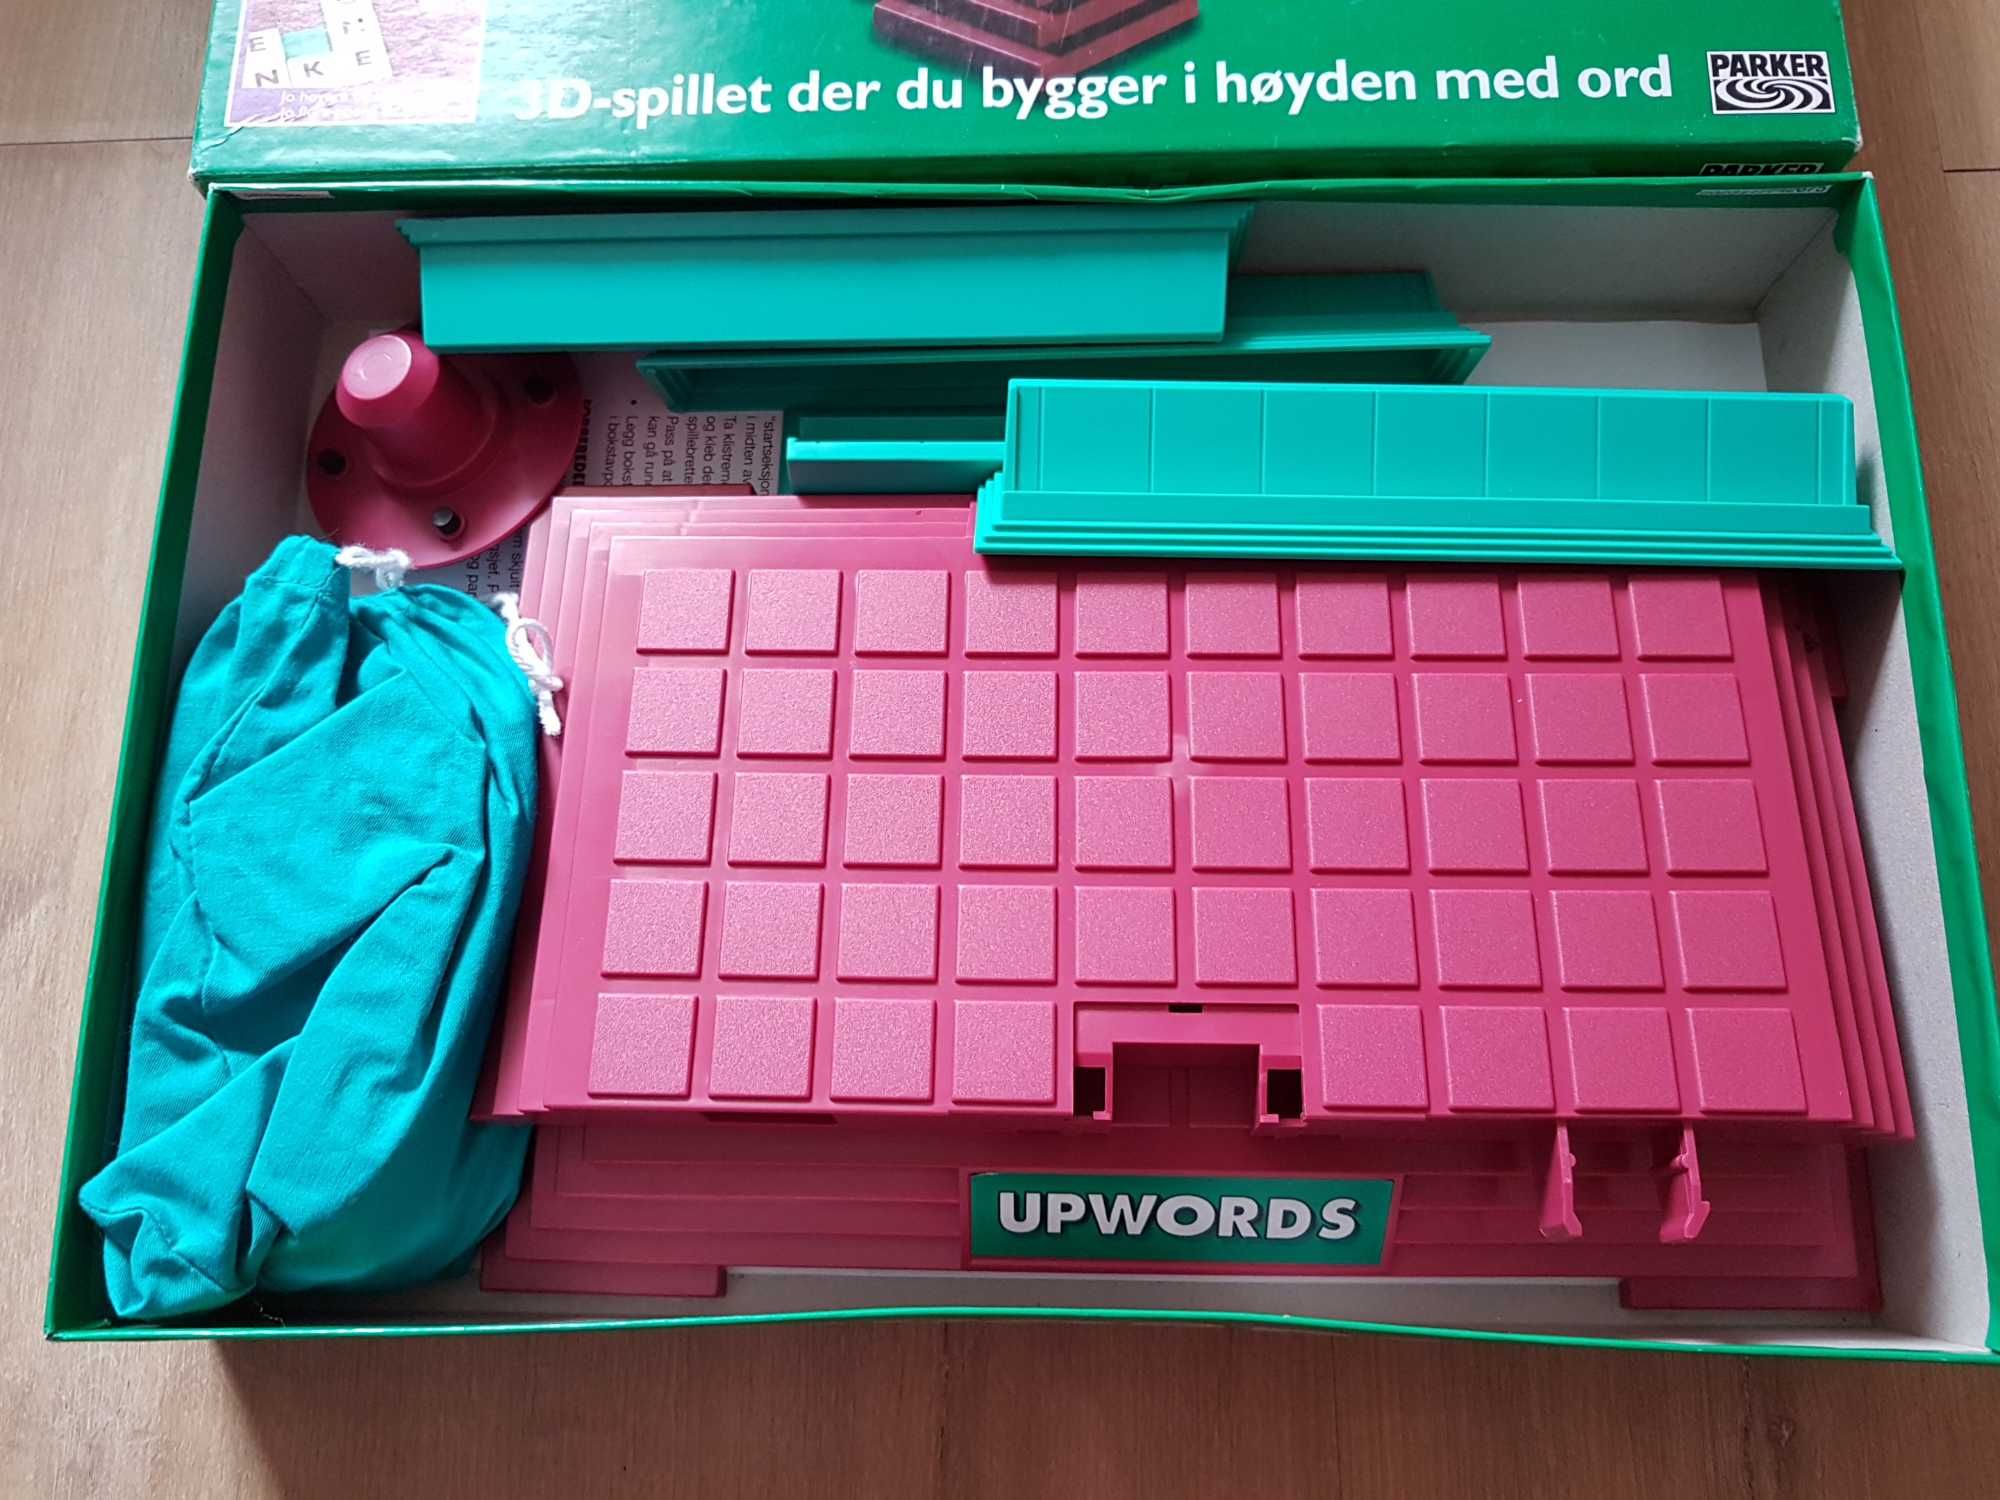 Gra Parker Upwords Przestrzenna gra w budowanie słów Scrabble